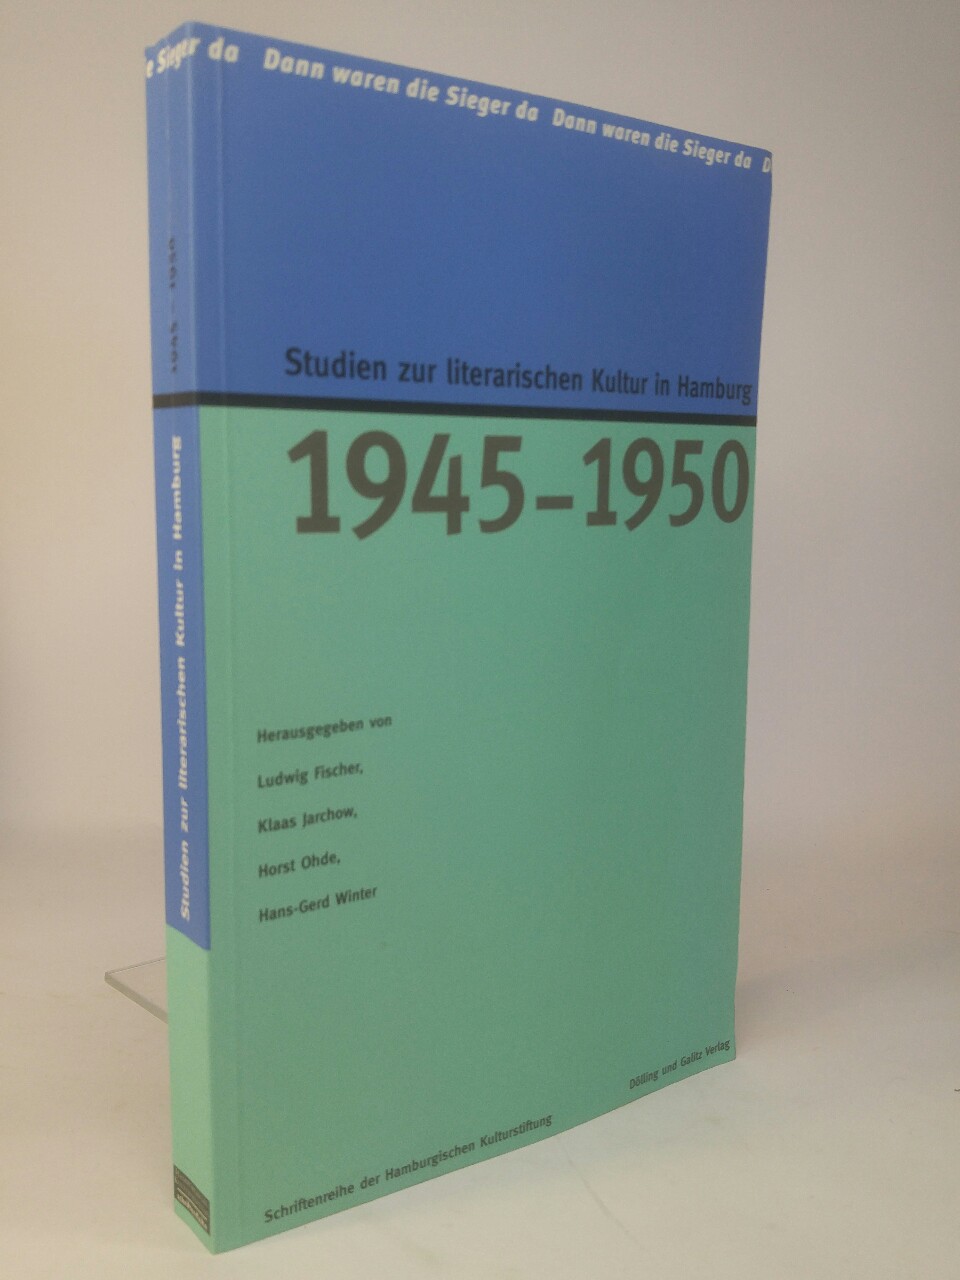 1945-1950. Studien zur literarischen Kultur in Hamburg. 